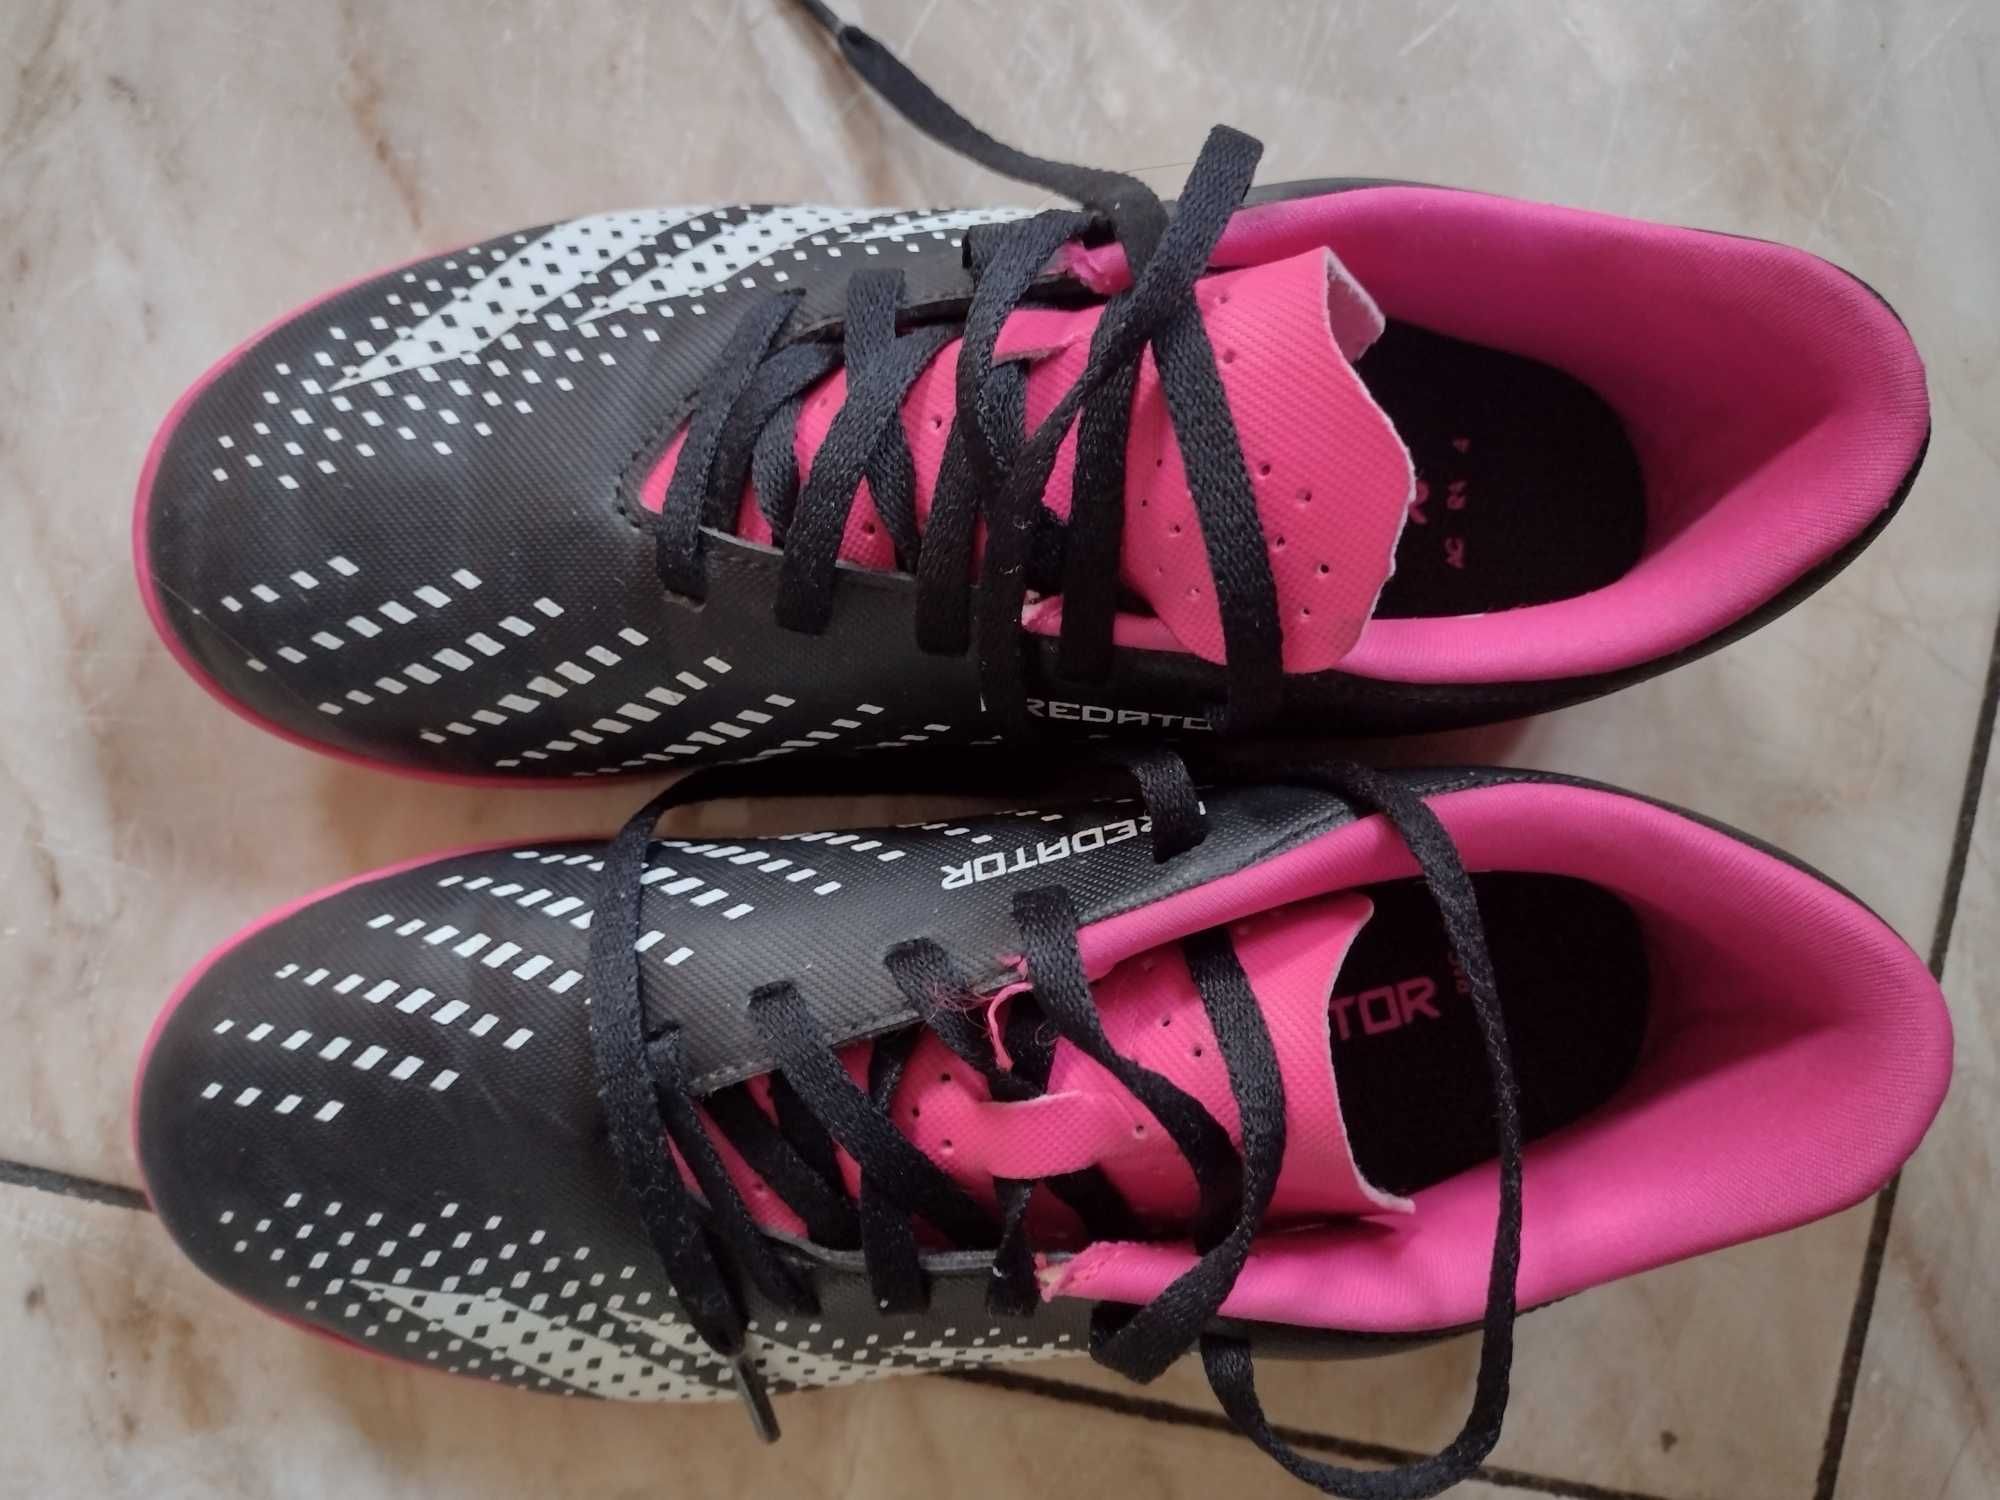 Buty damskie ADIDAS PREDATOR różowe piłka nożna